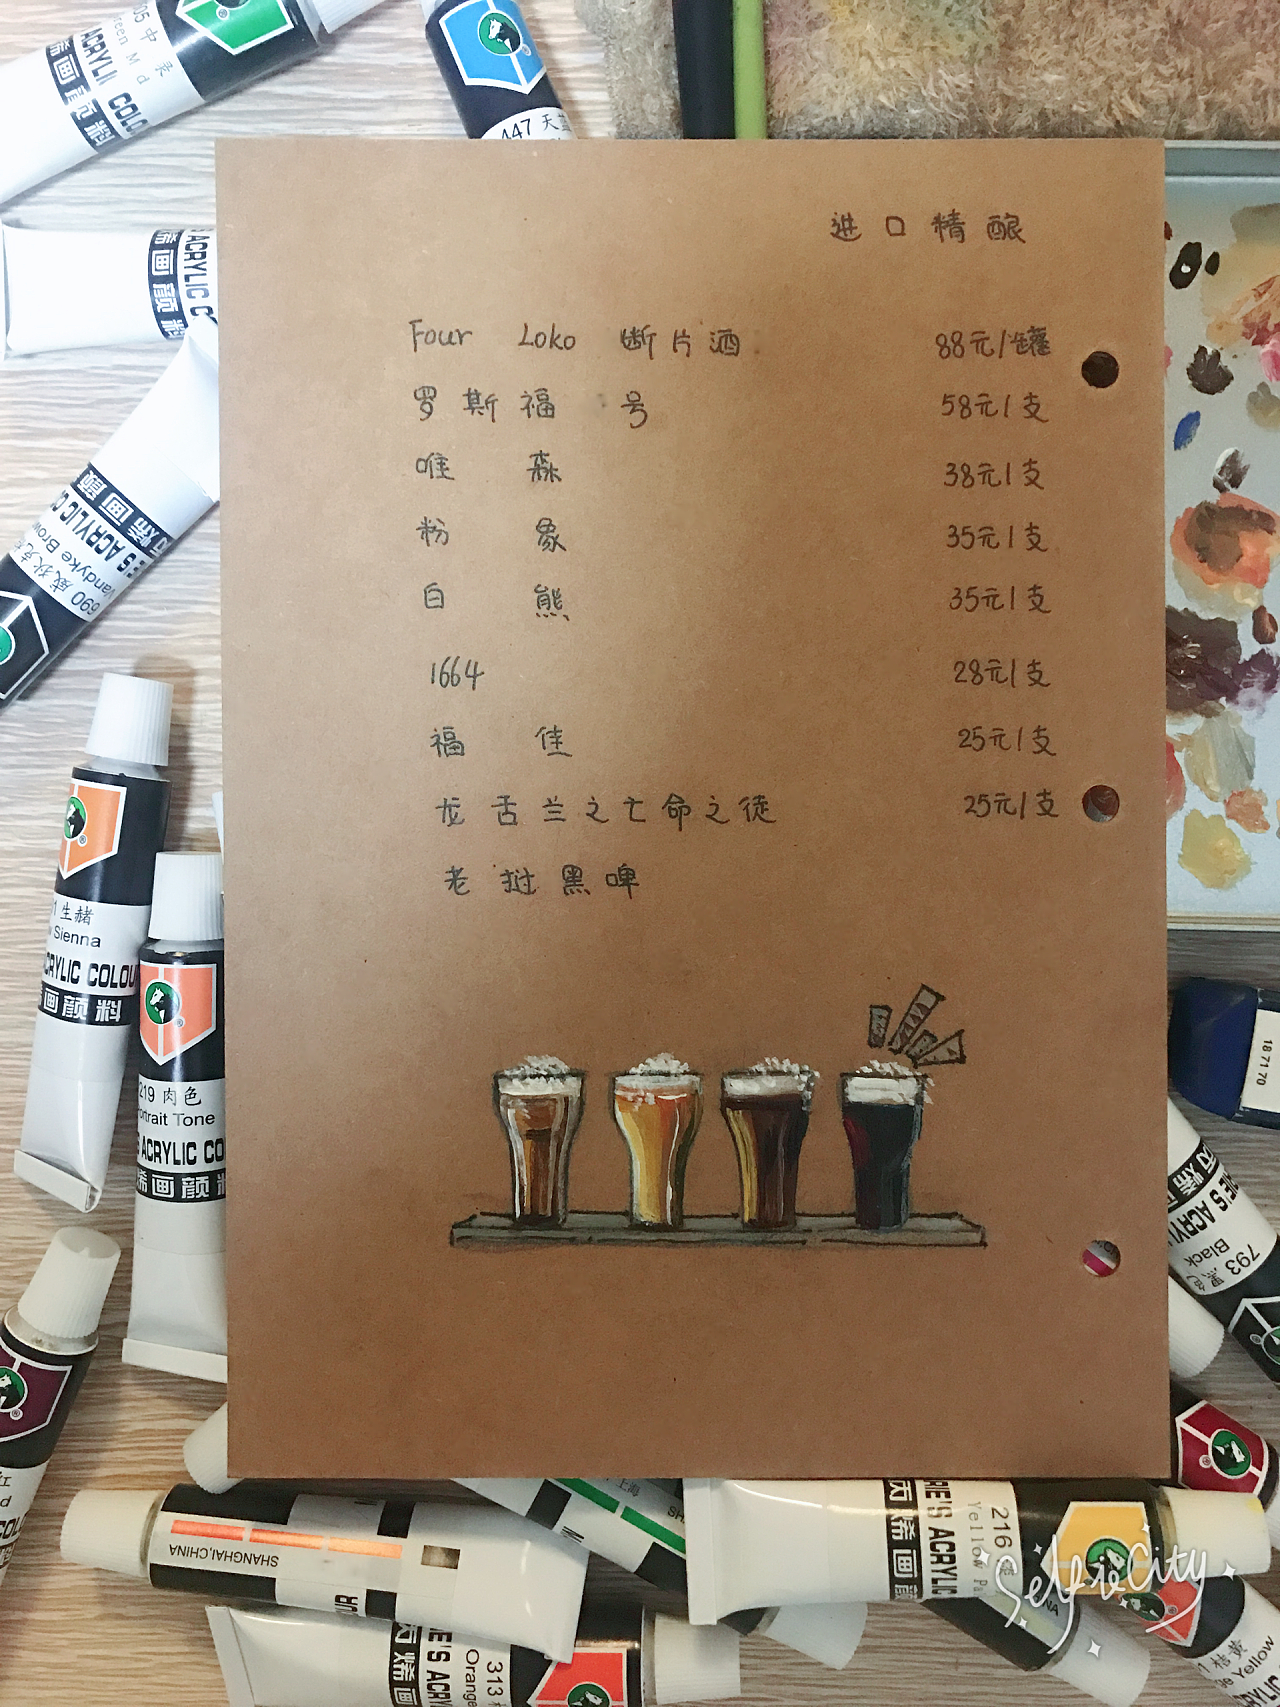 咖啡馆·手绘菜单/cafe, hand-painted menu